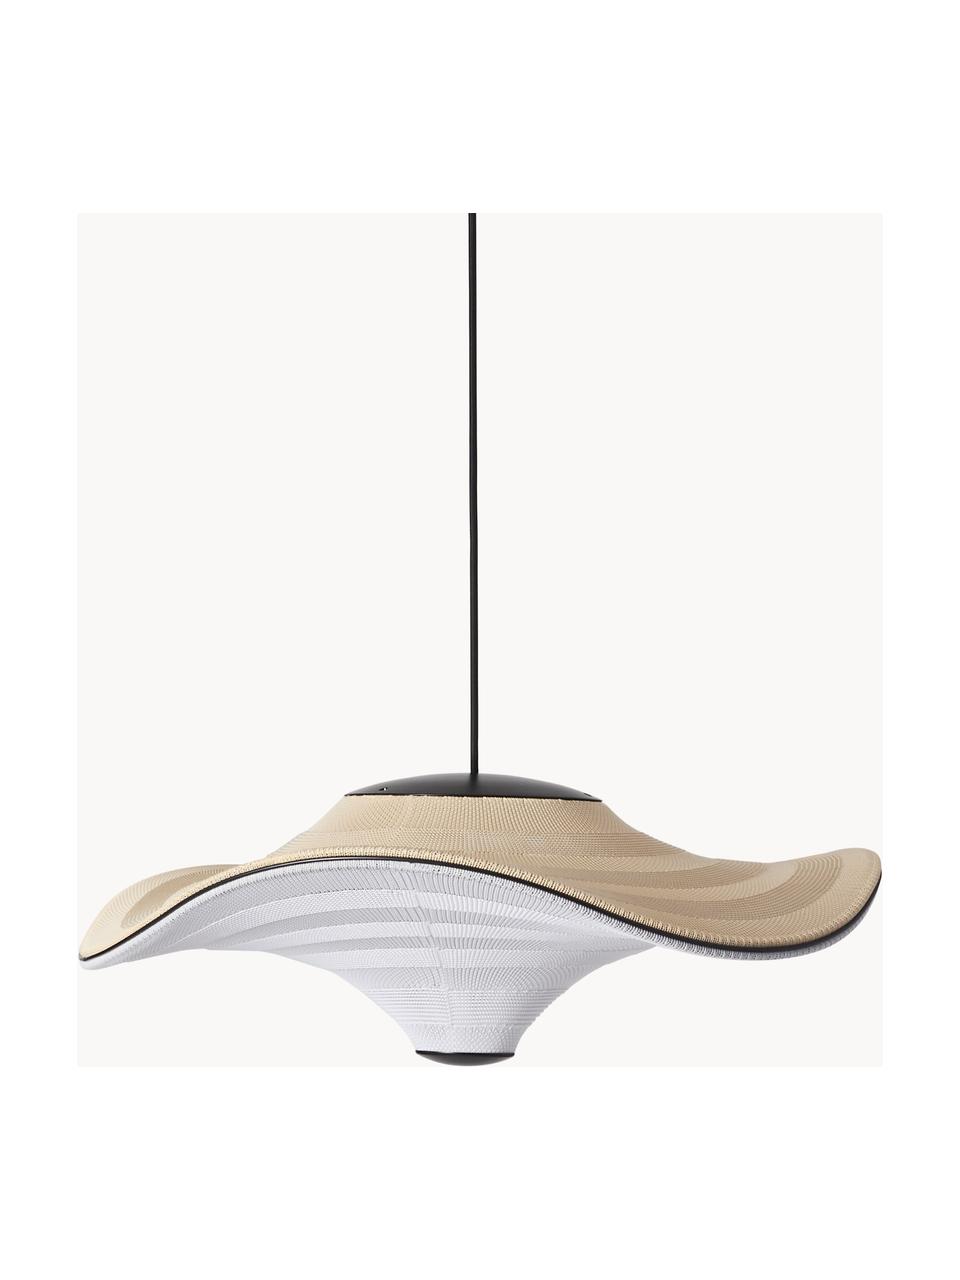 LED hanglamp Flying uit natuurlijke vezels, Lampenkap: natuurlijke vezel, Lichtbeige, wit, Ø 58 x H 27 cm